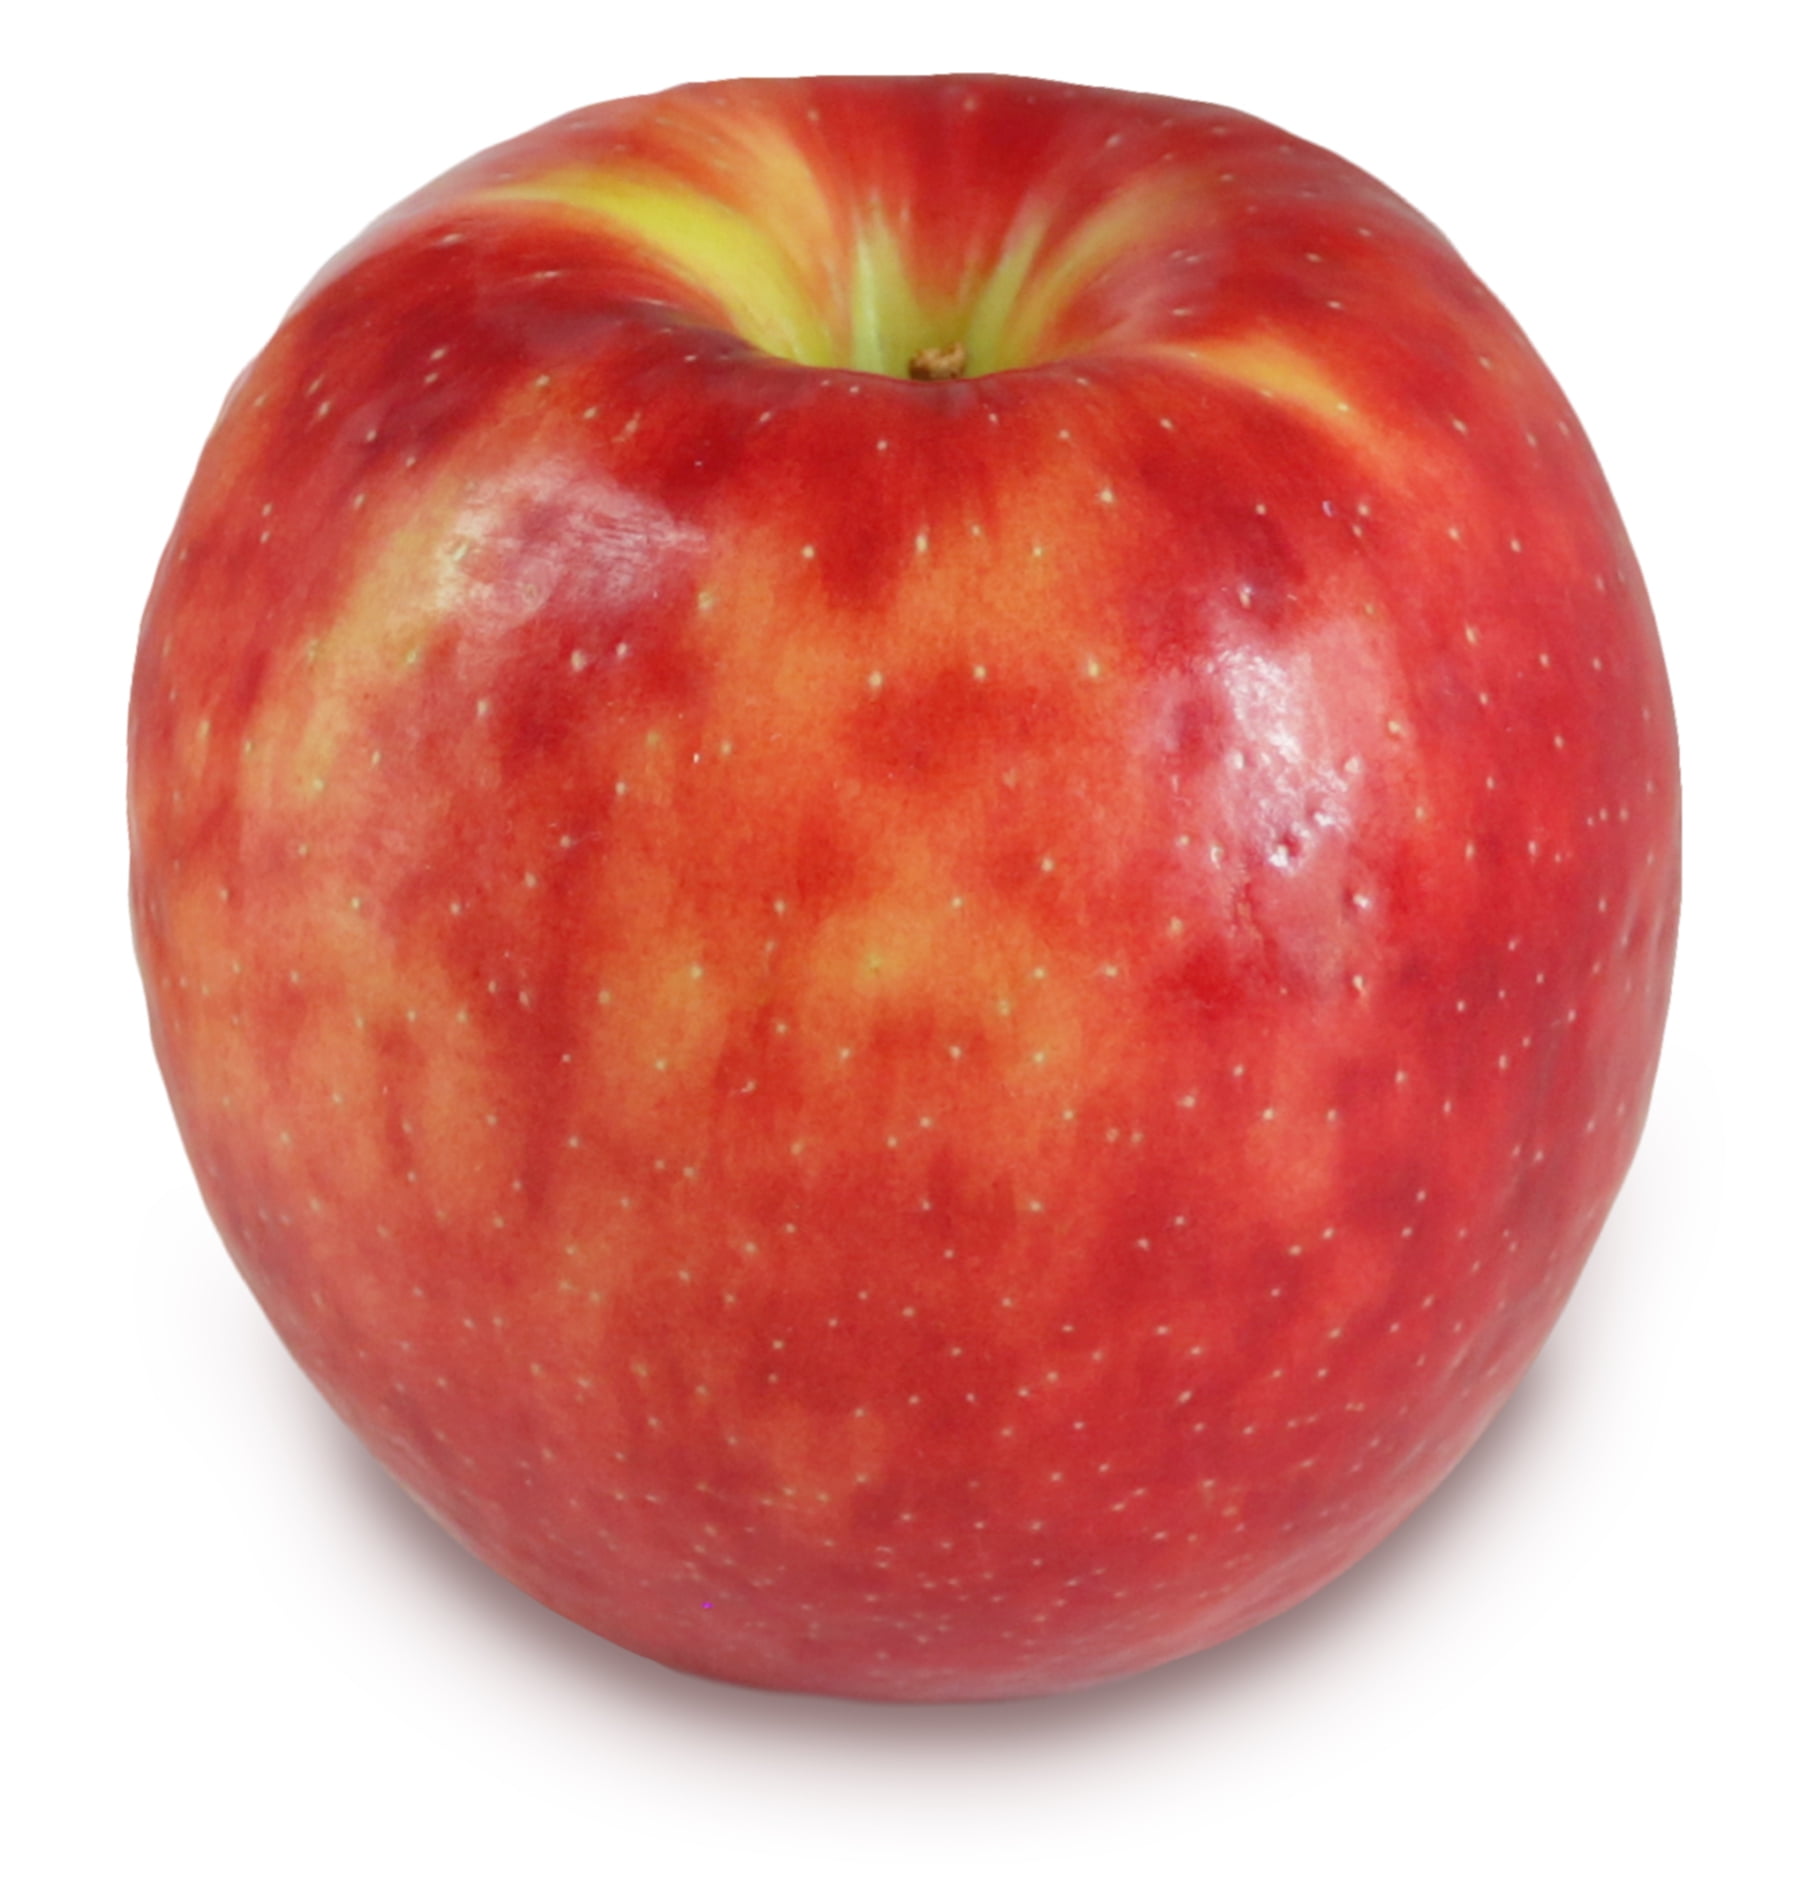 download the new for apple Bulk Image Downloader 6.27